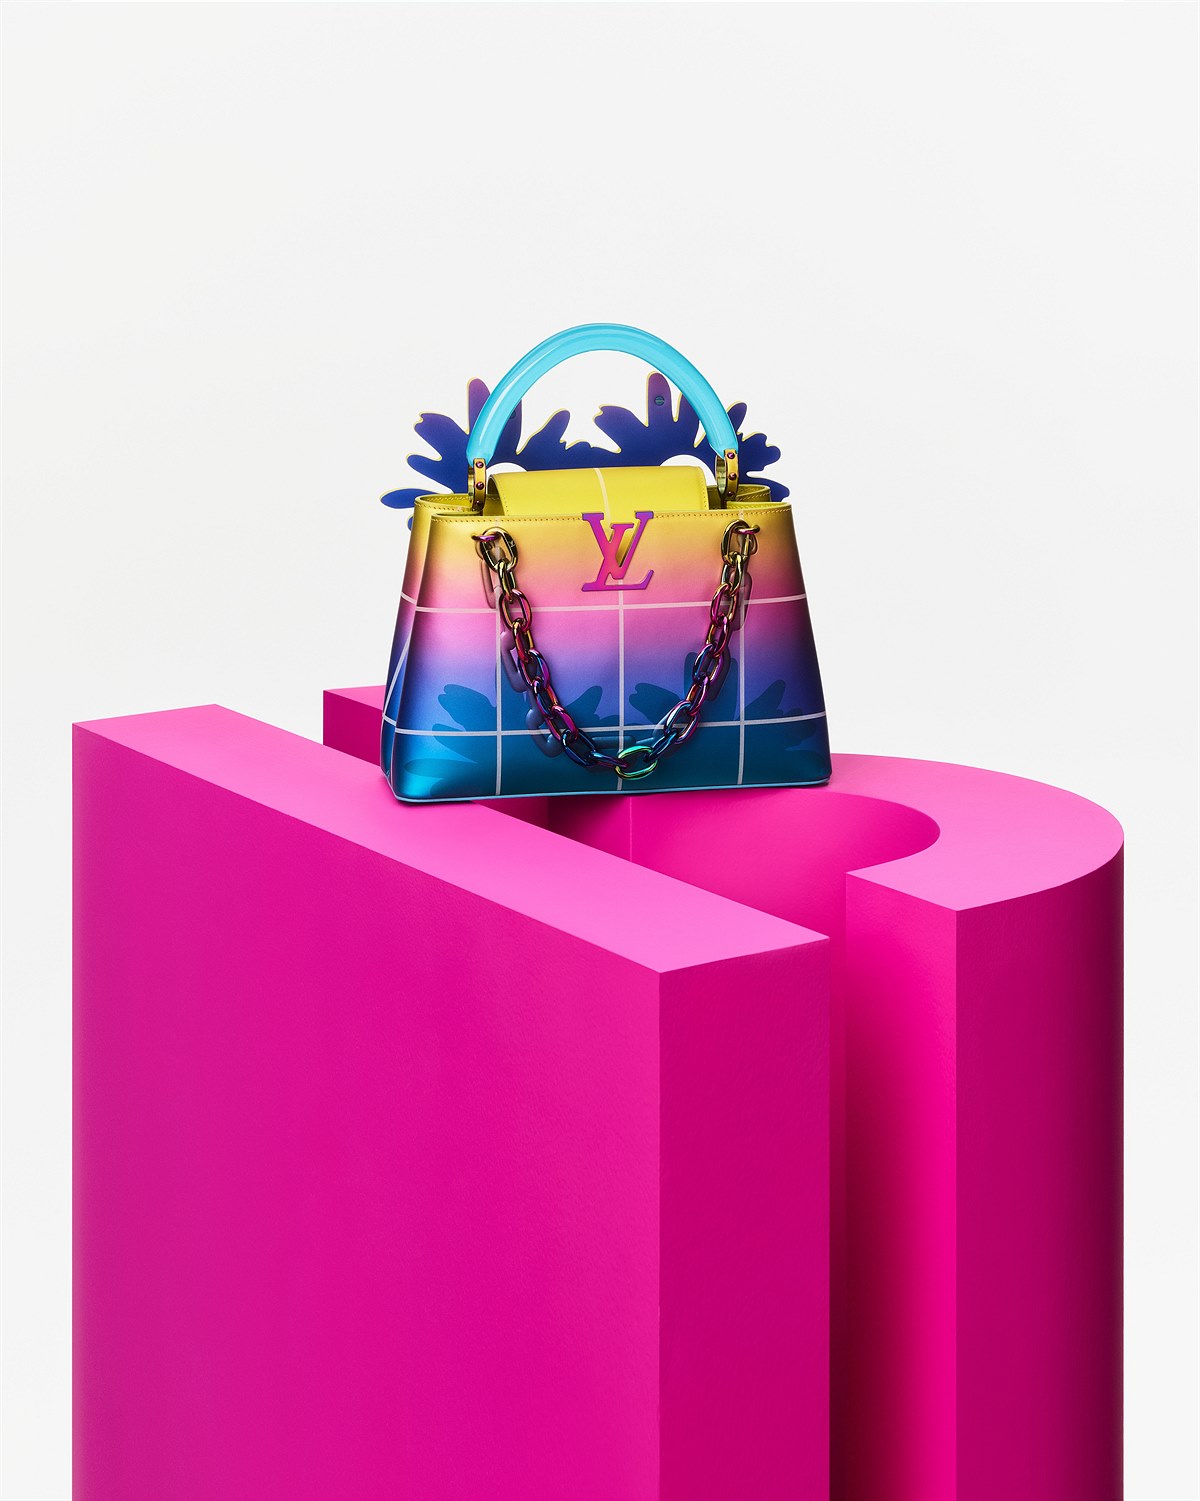 Louis Vuitton Artycapucines 2022_Chapter 4_Still life_Amélie Bertrand